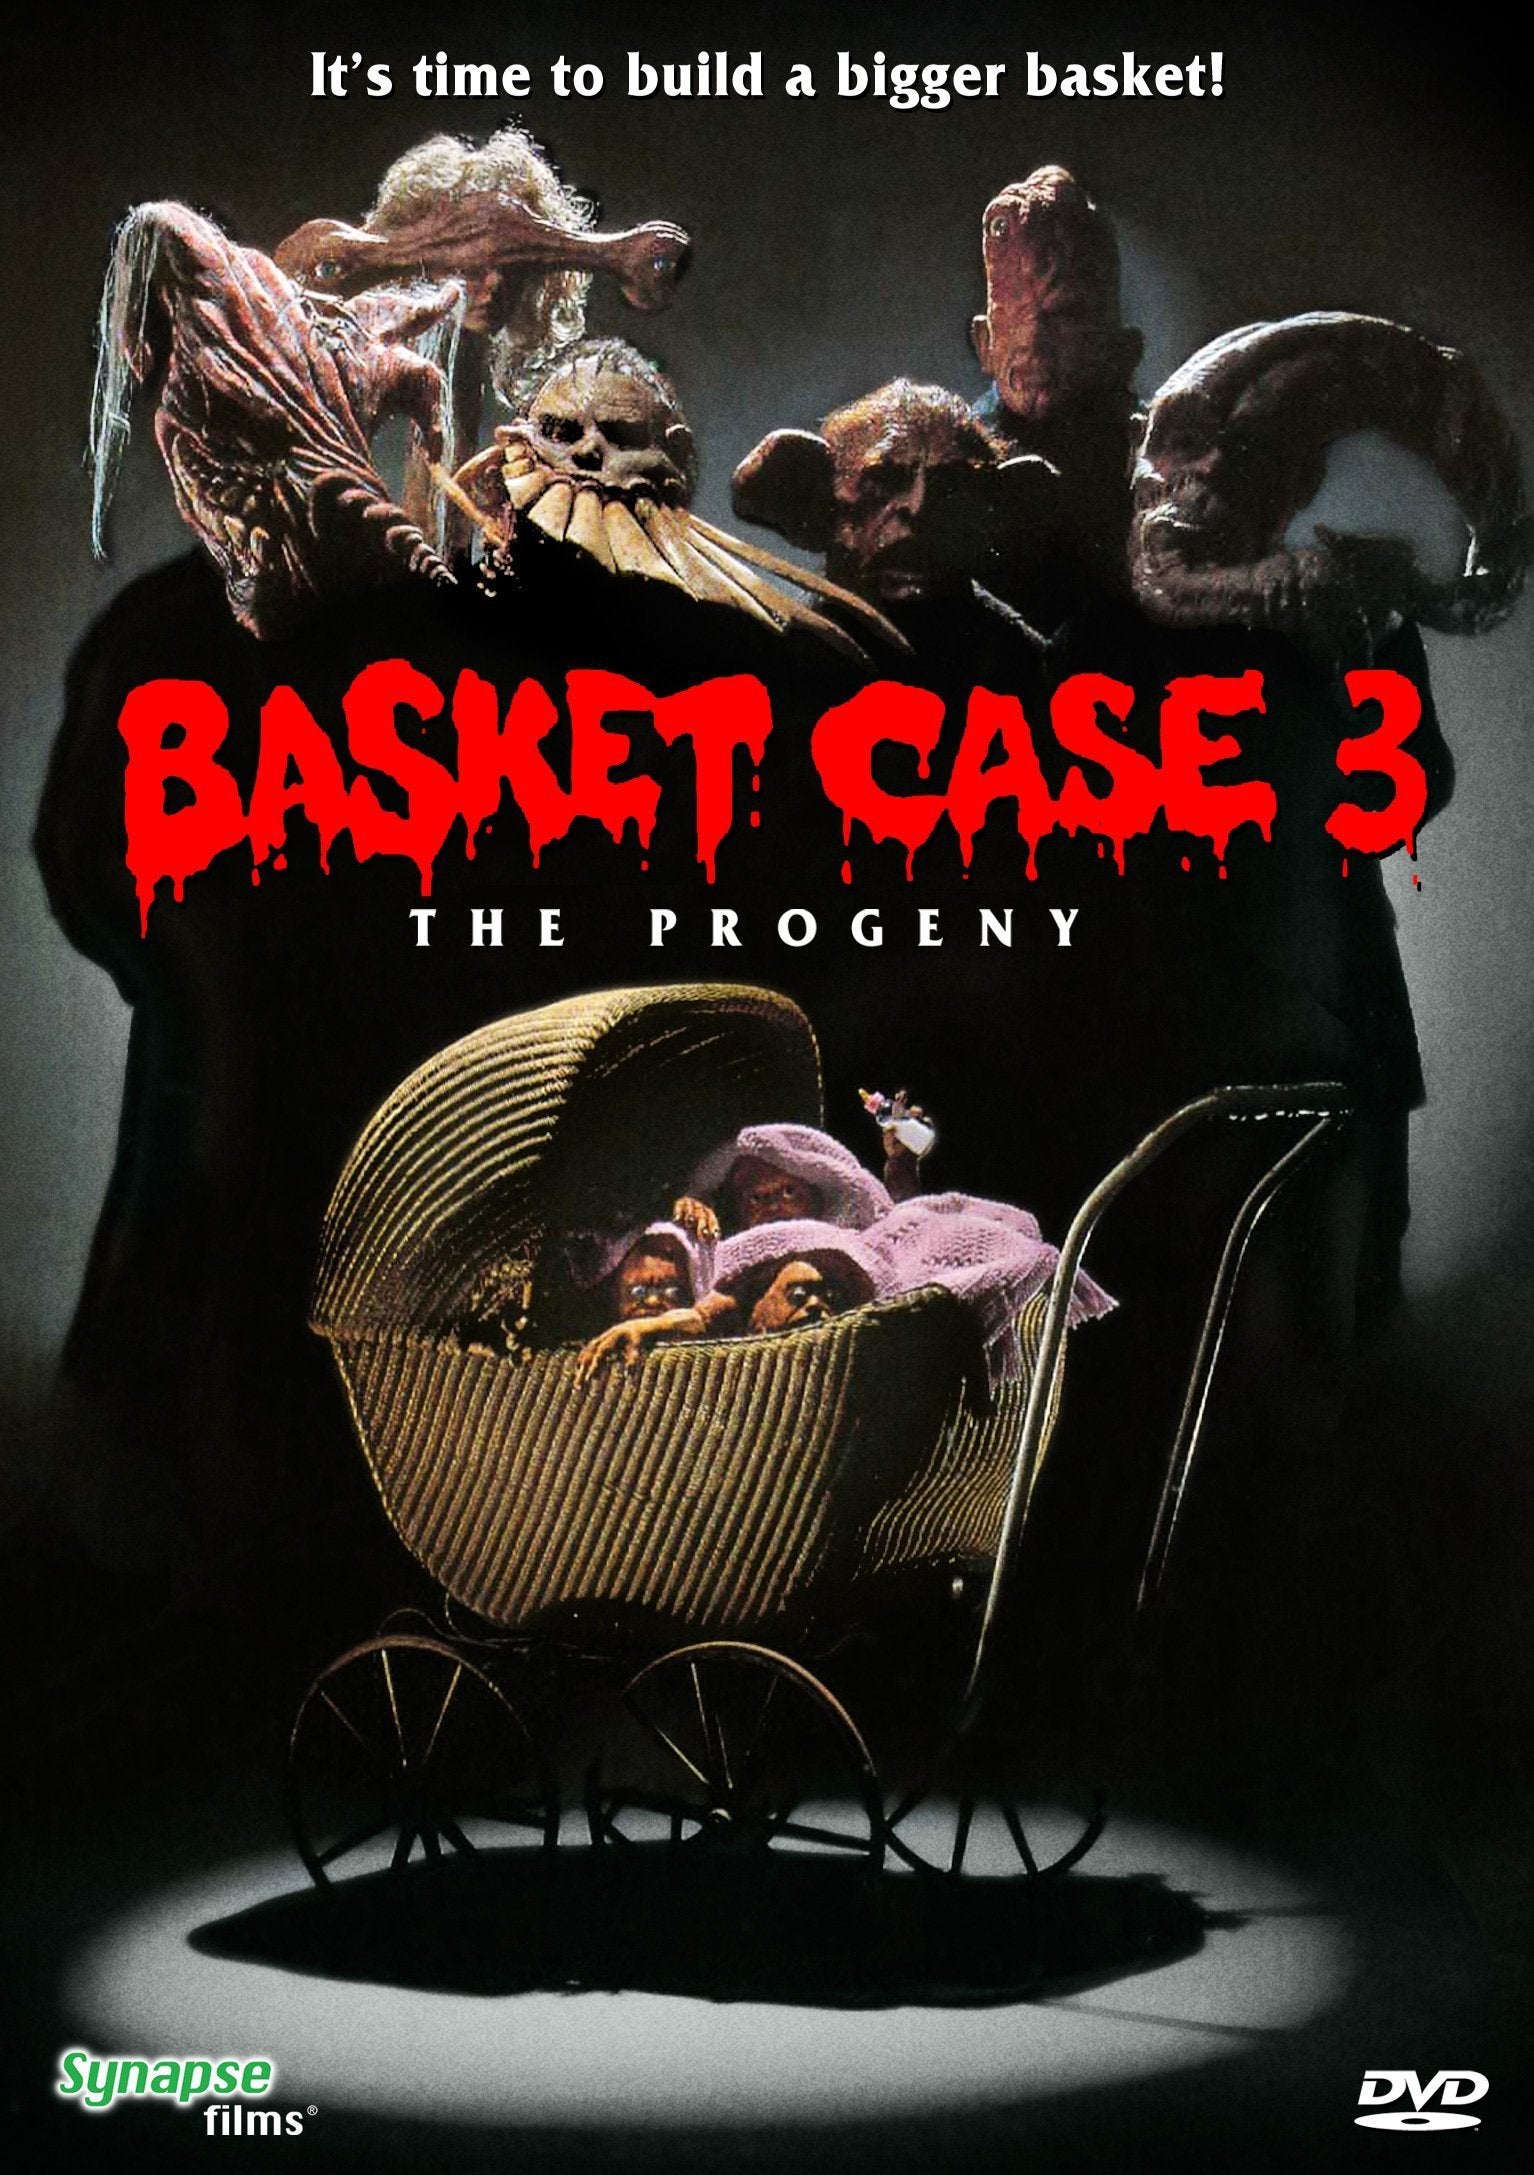 BASKET CASE 3: THE PROGENY DVD